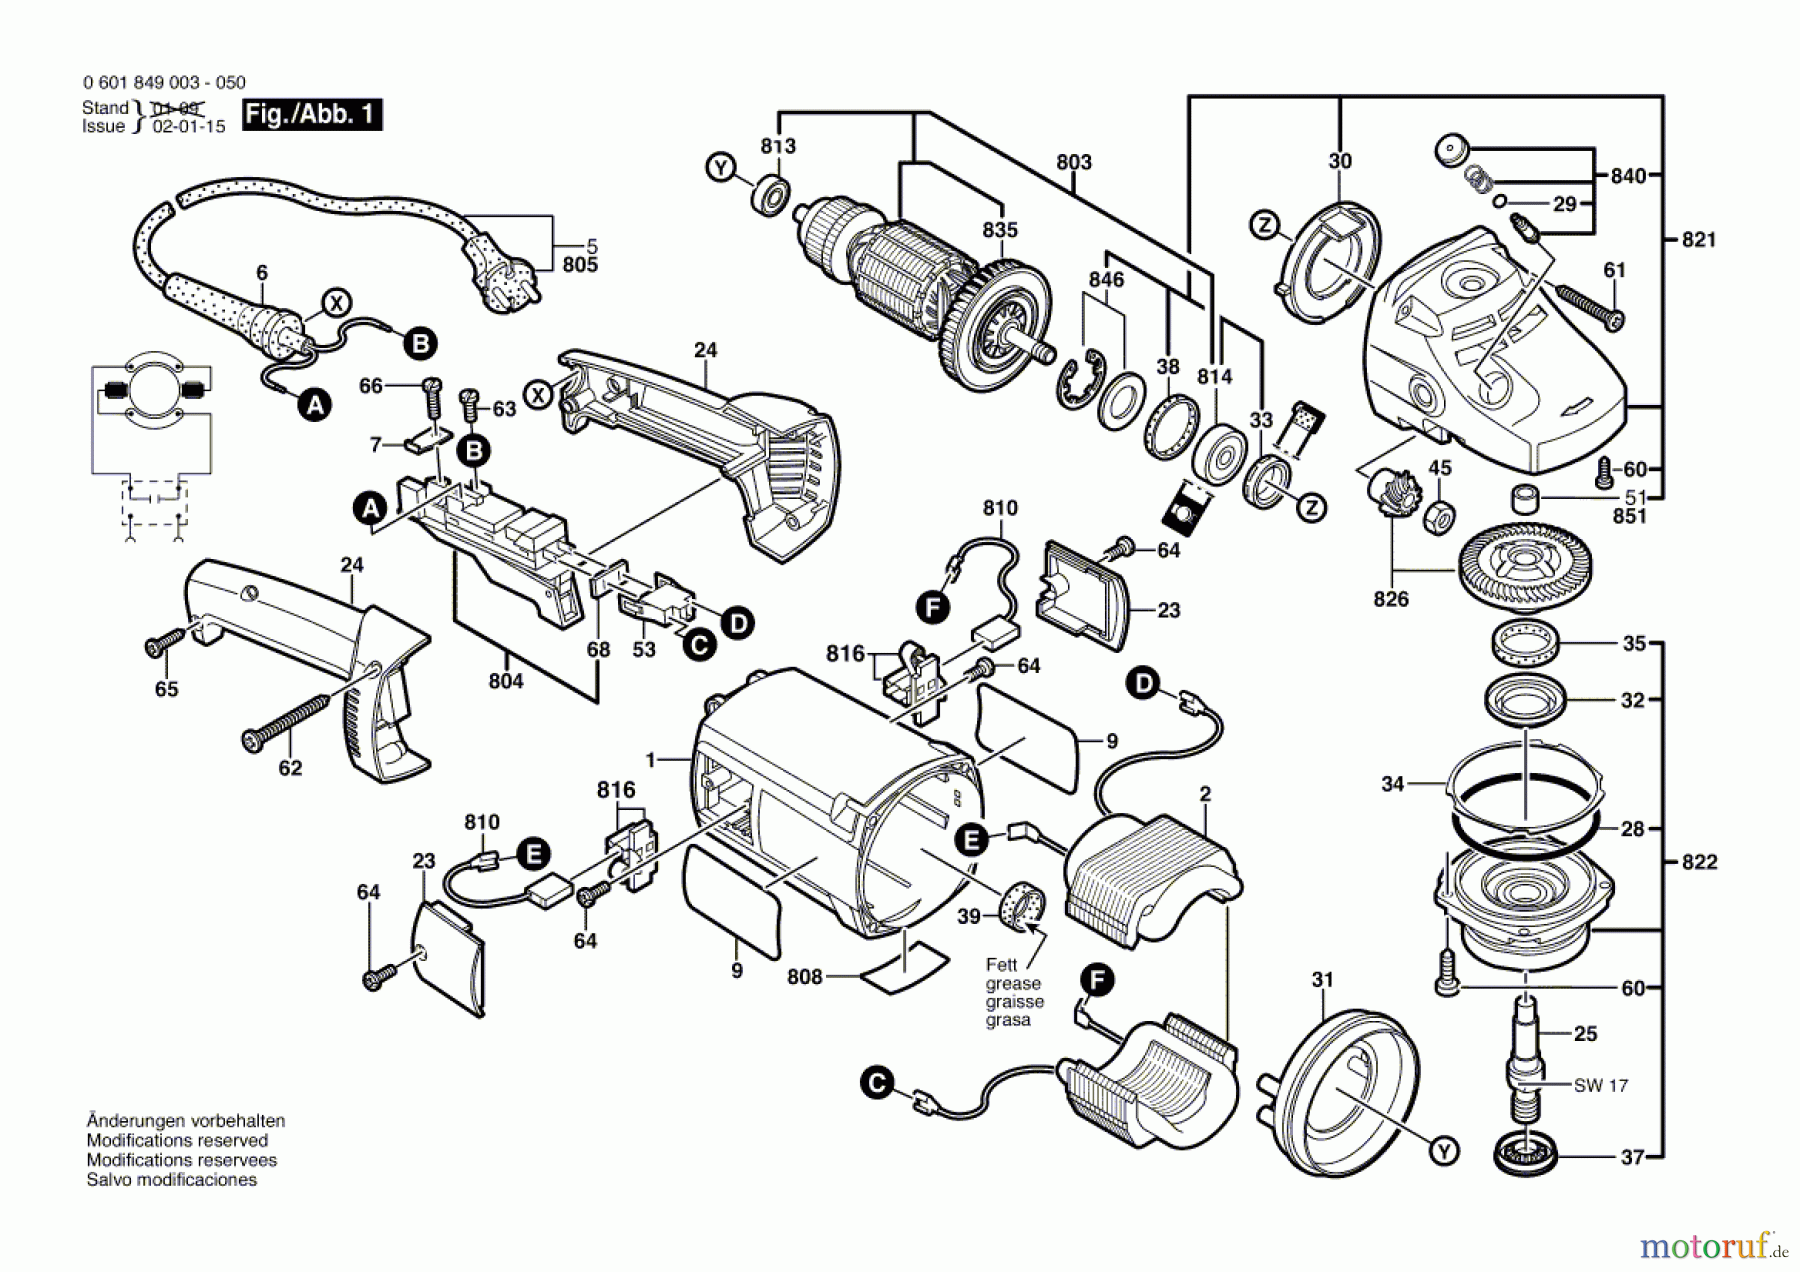  Bosch Werkzeug Winkelschleifer GWS 20-180 H Seite 1